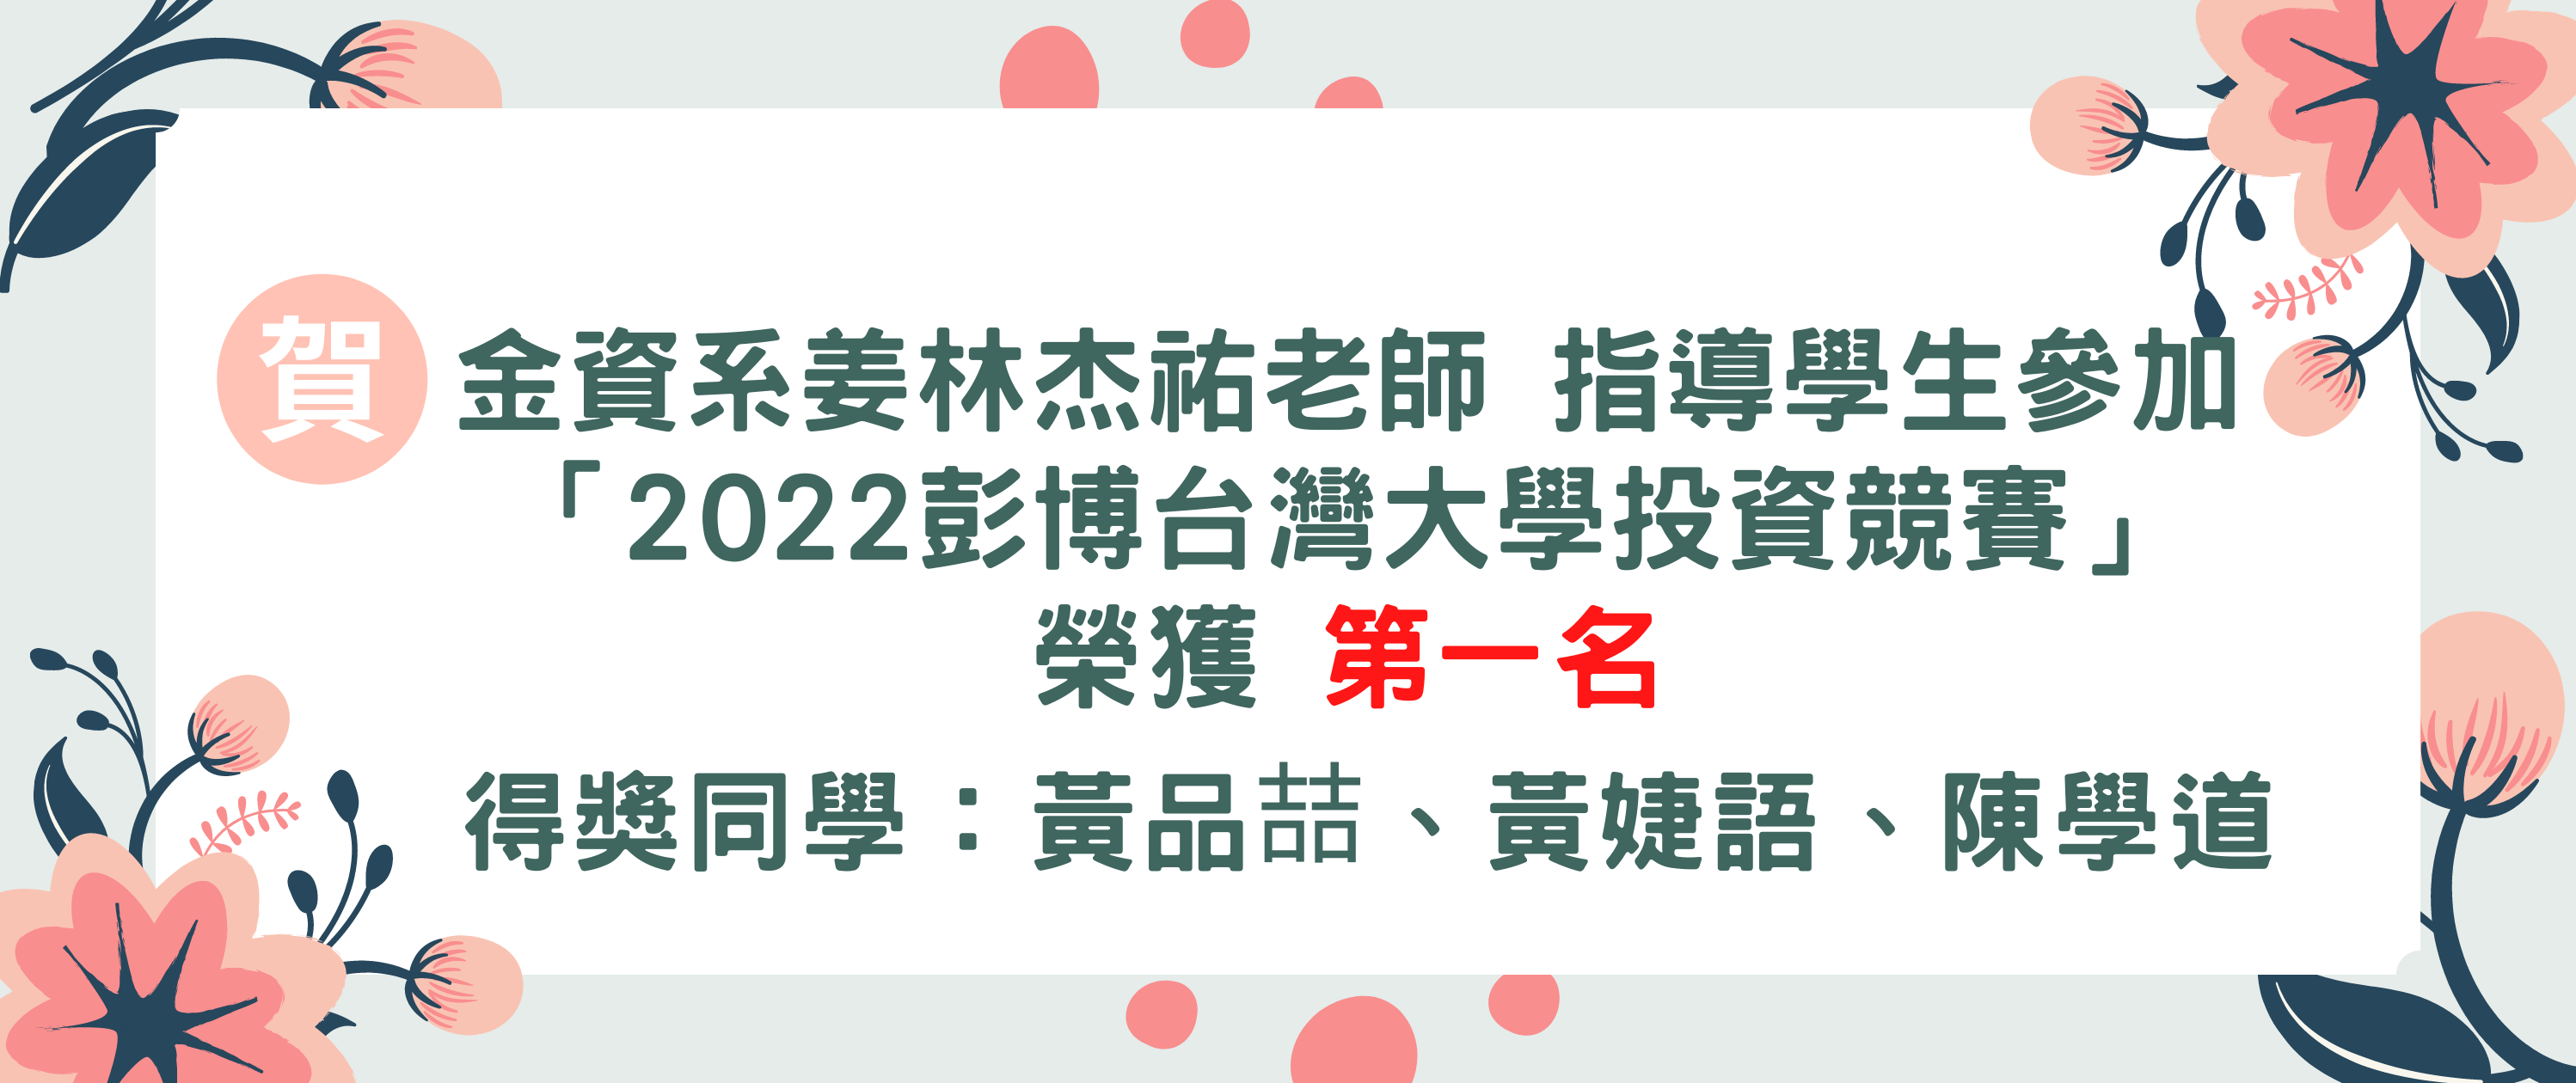 2022彭博台湾大学投资竞赛